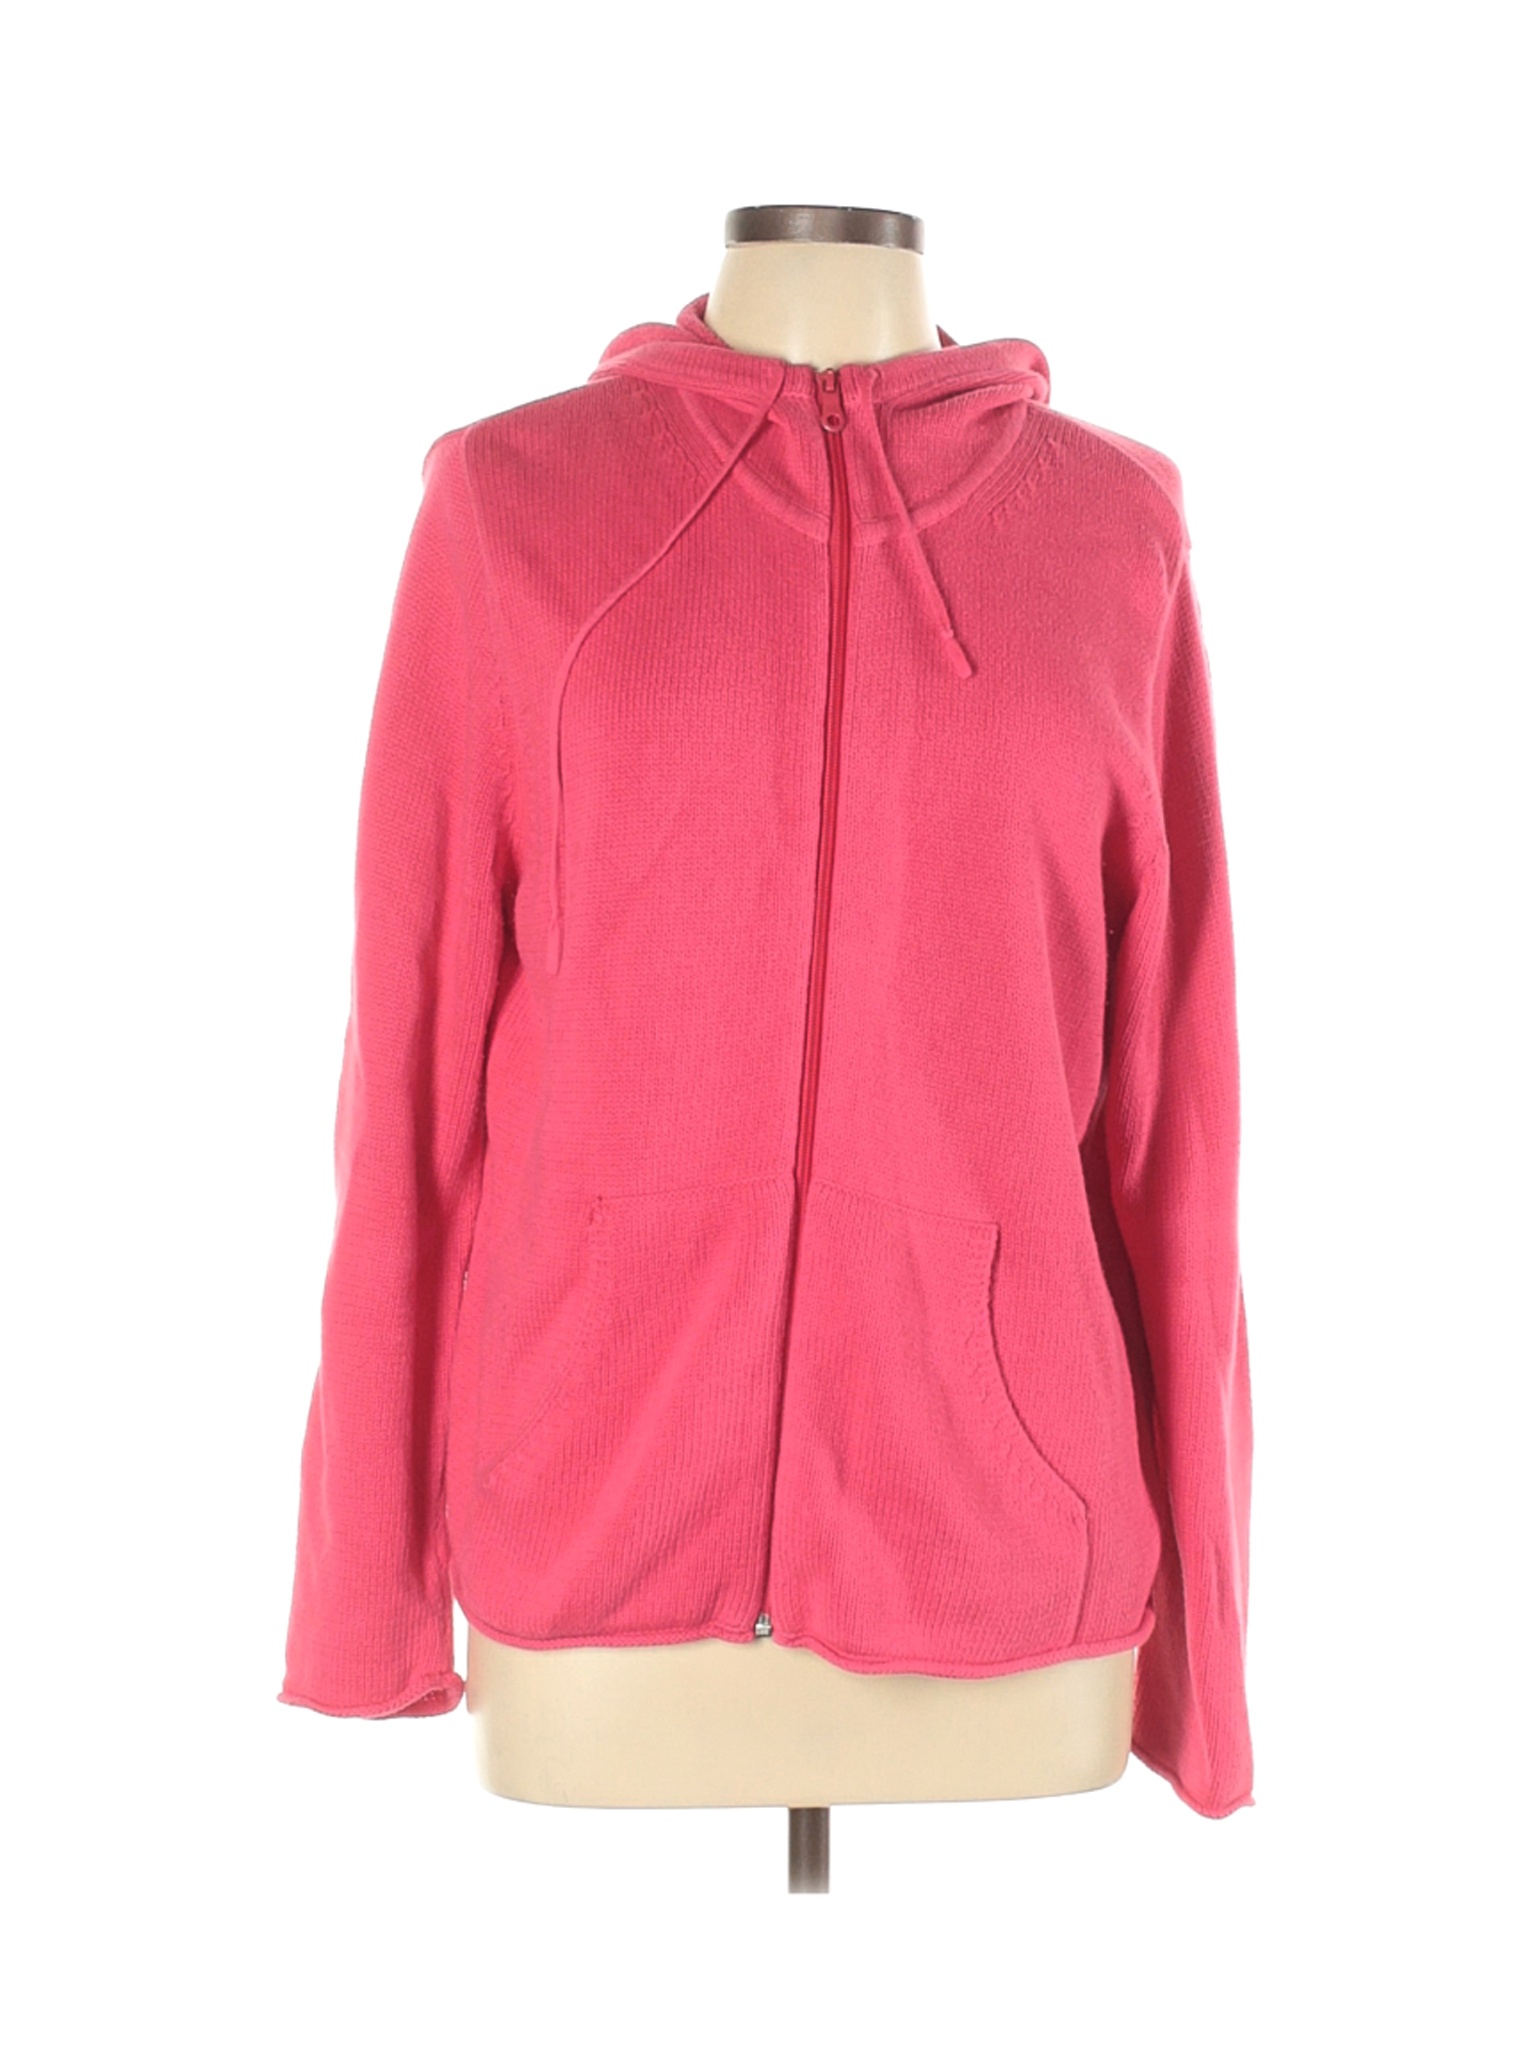 Karen Scott Sport Women Pink Zip Up Hoodie L | eBay